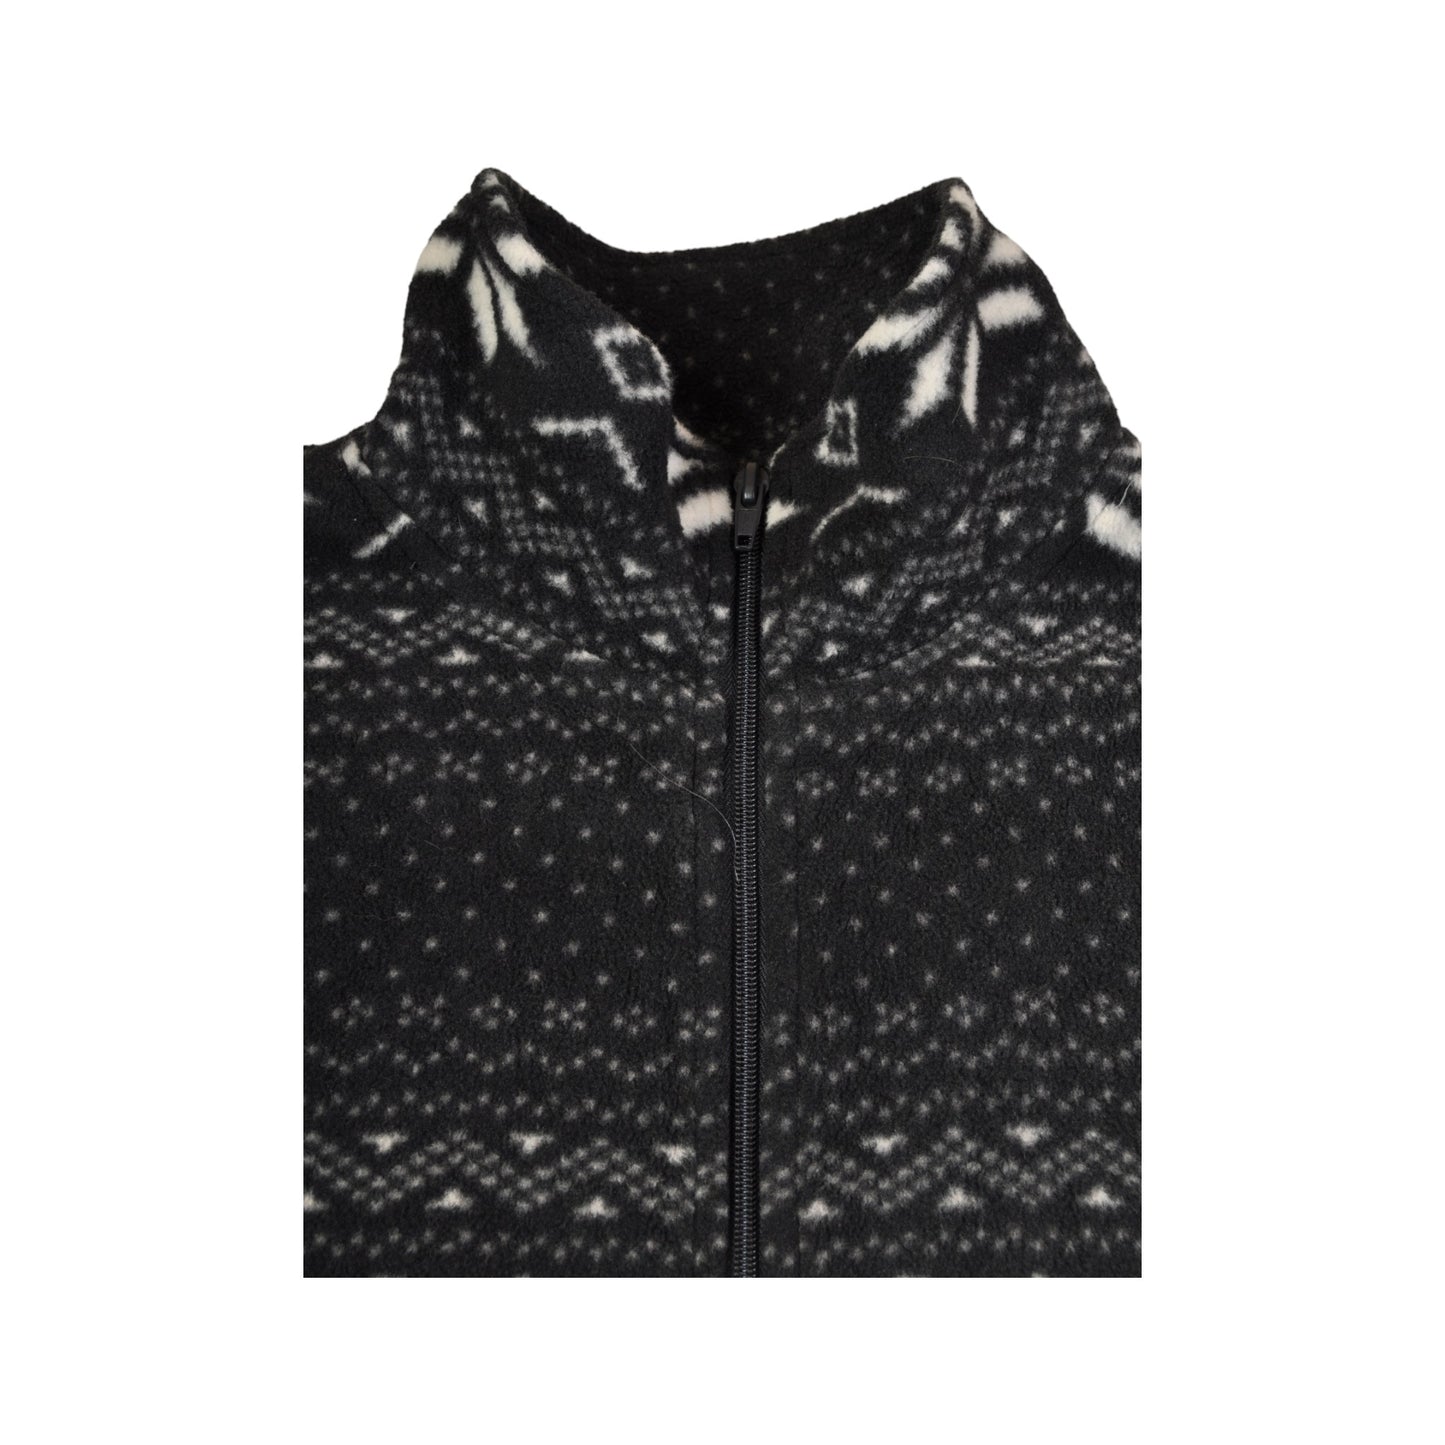 Vintage Fleece Jacket Retro Snowflake Pattern Black Ladies Medium